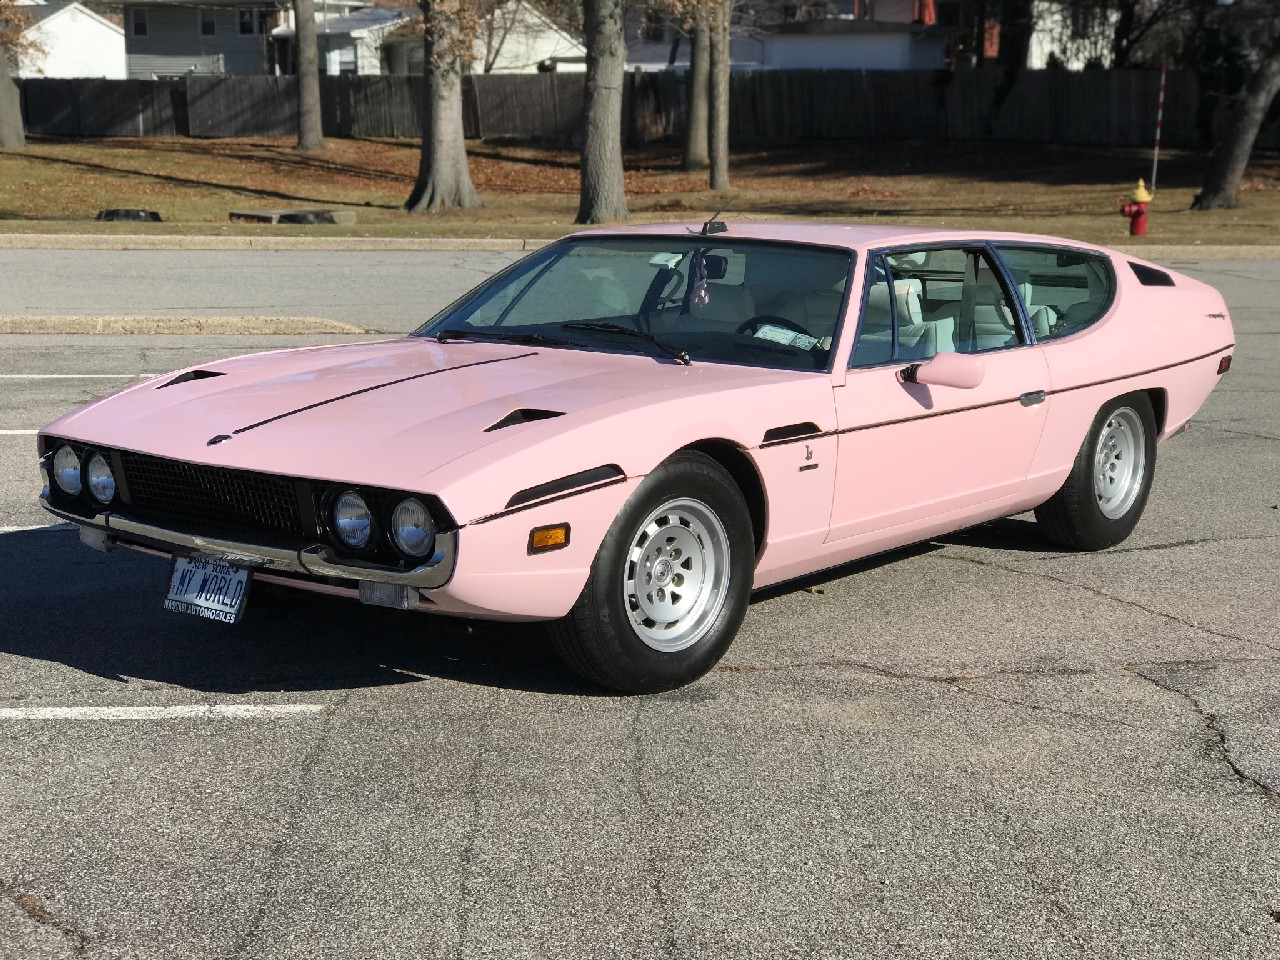 Un Lamborghini Espada de color rosa? Una rareza algo sacrílega